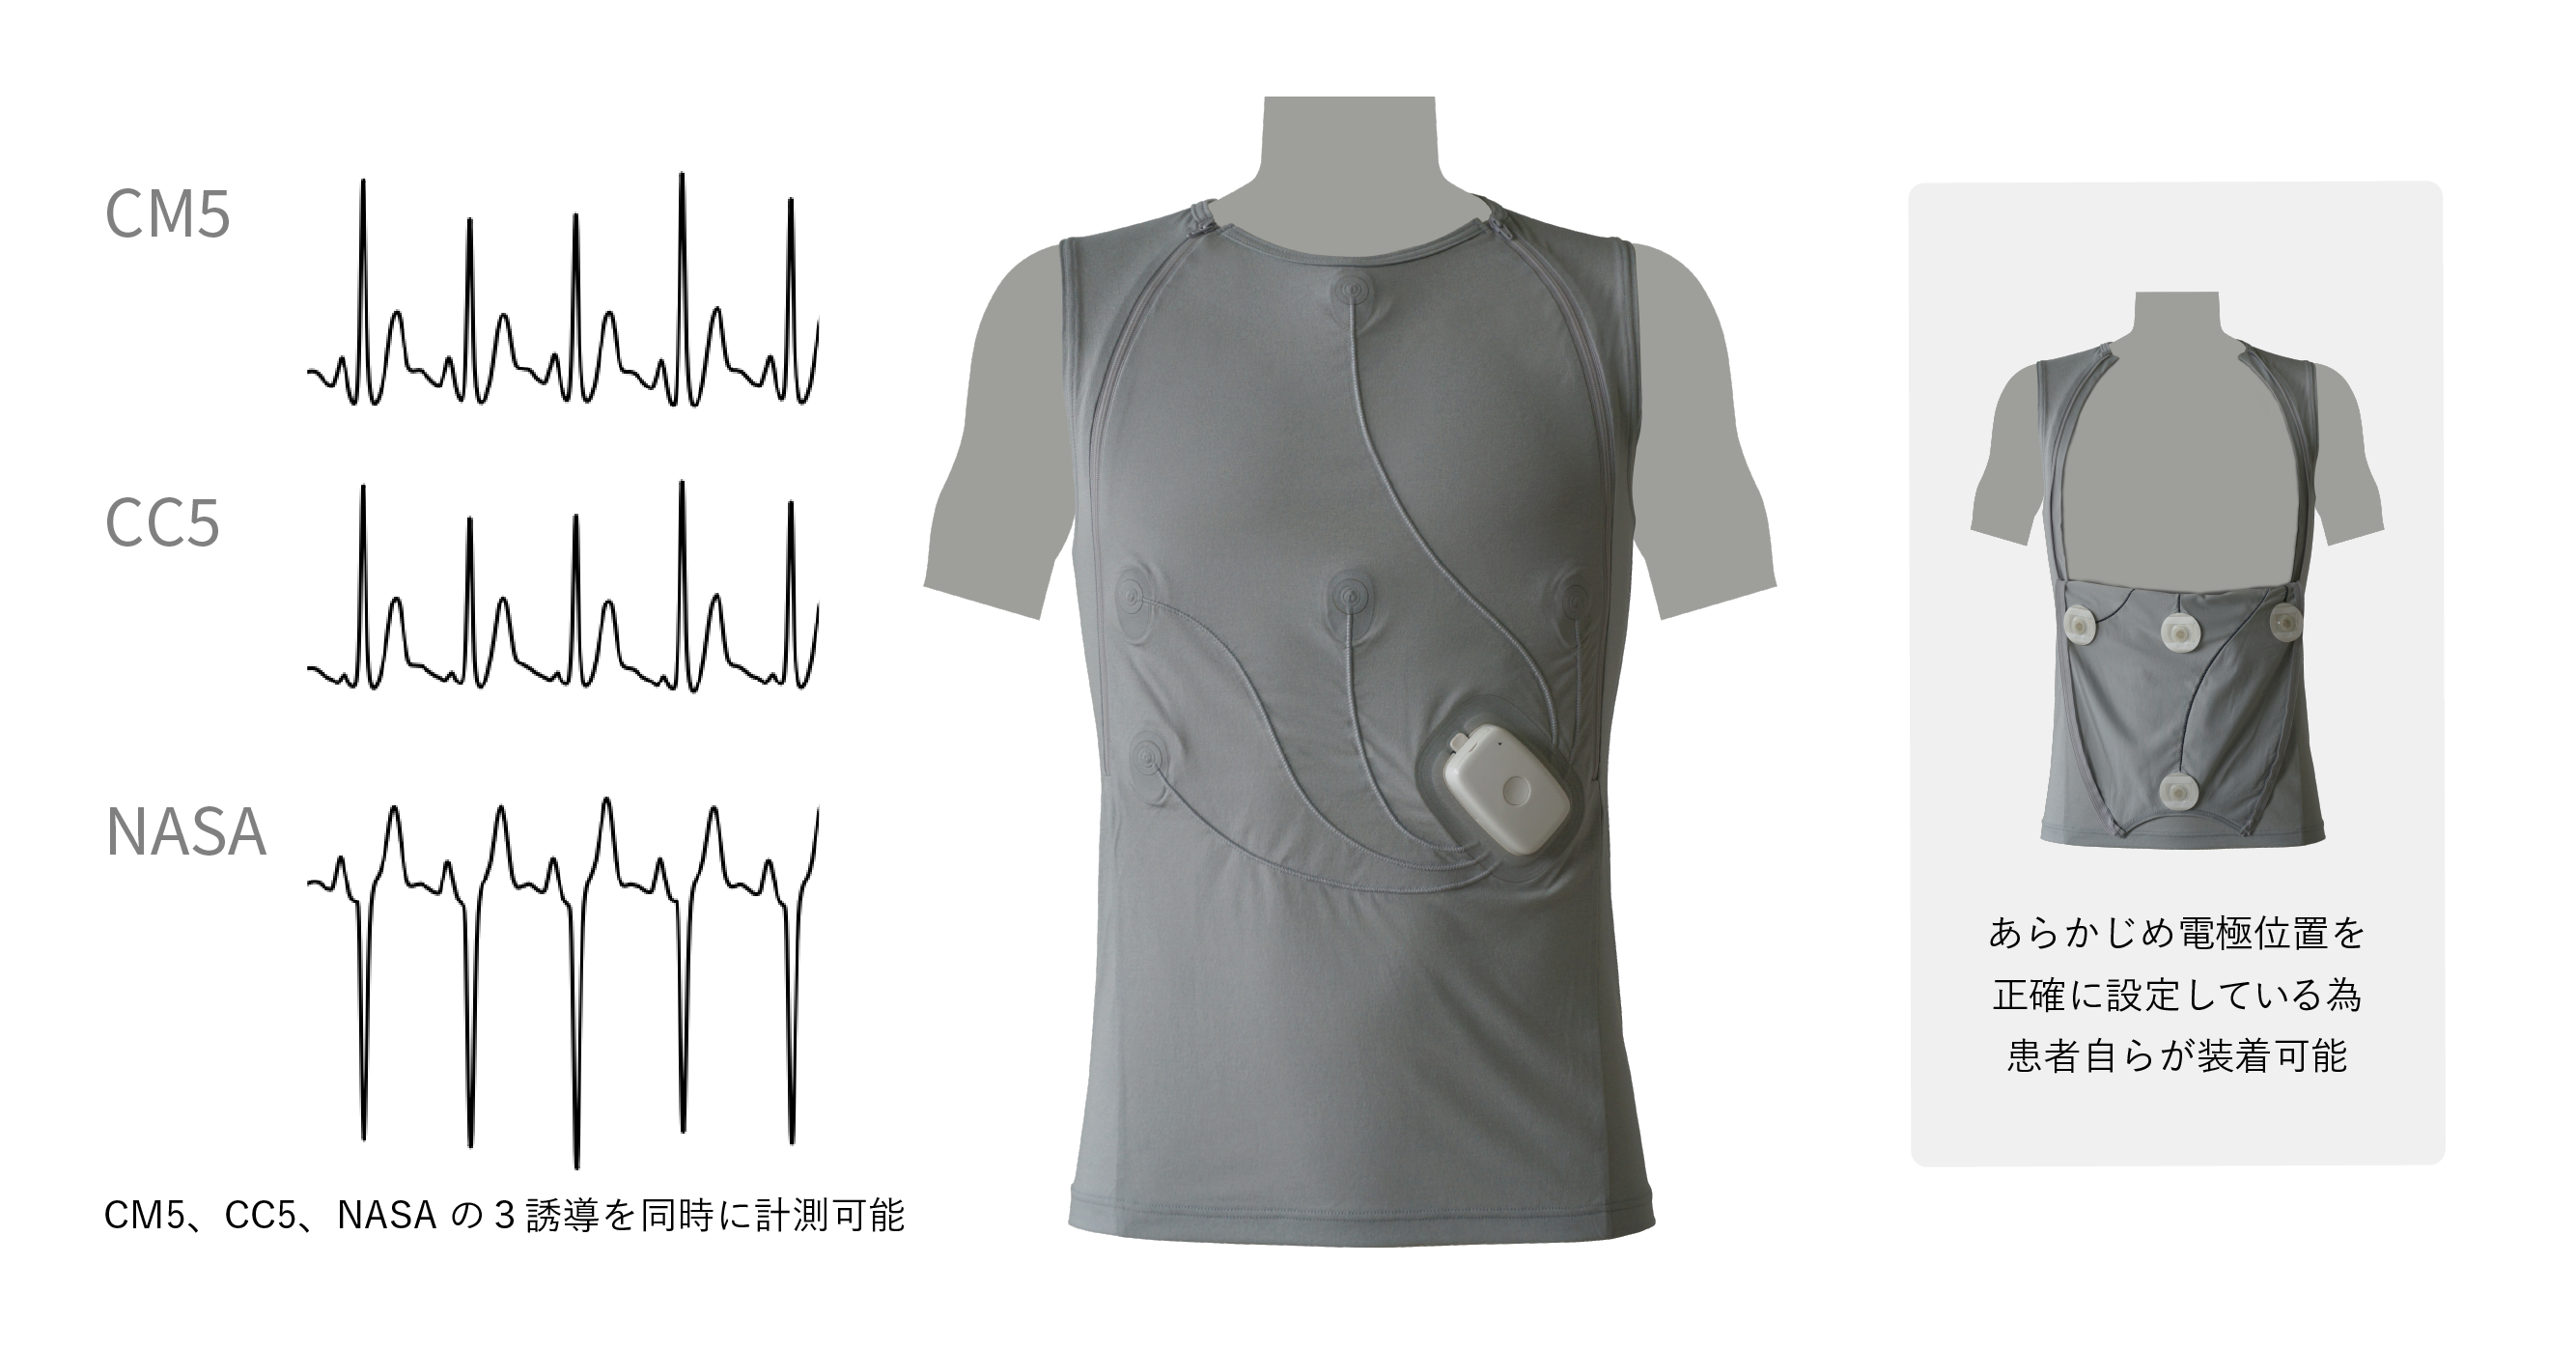 患者自ら装着可能な着衣型心電計測システムによる心電検査を実用化、保険適用開始